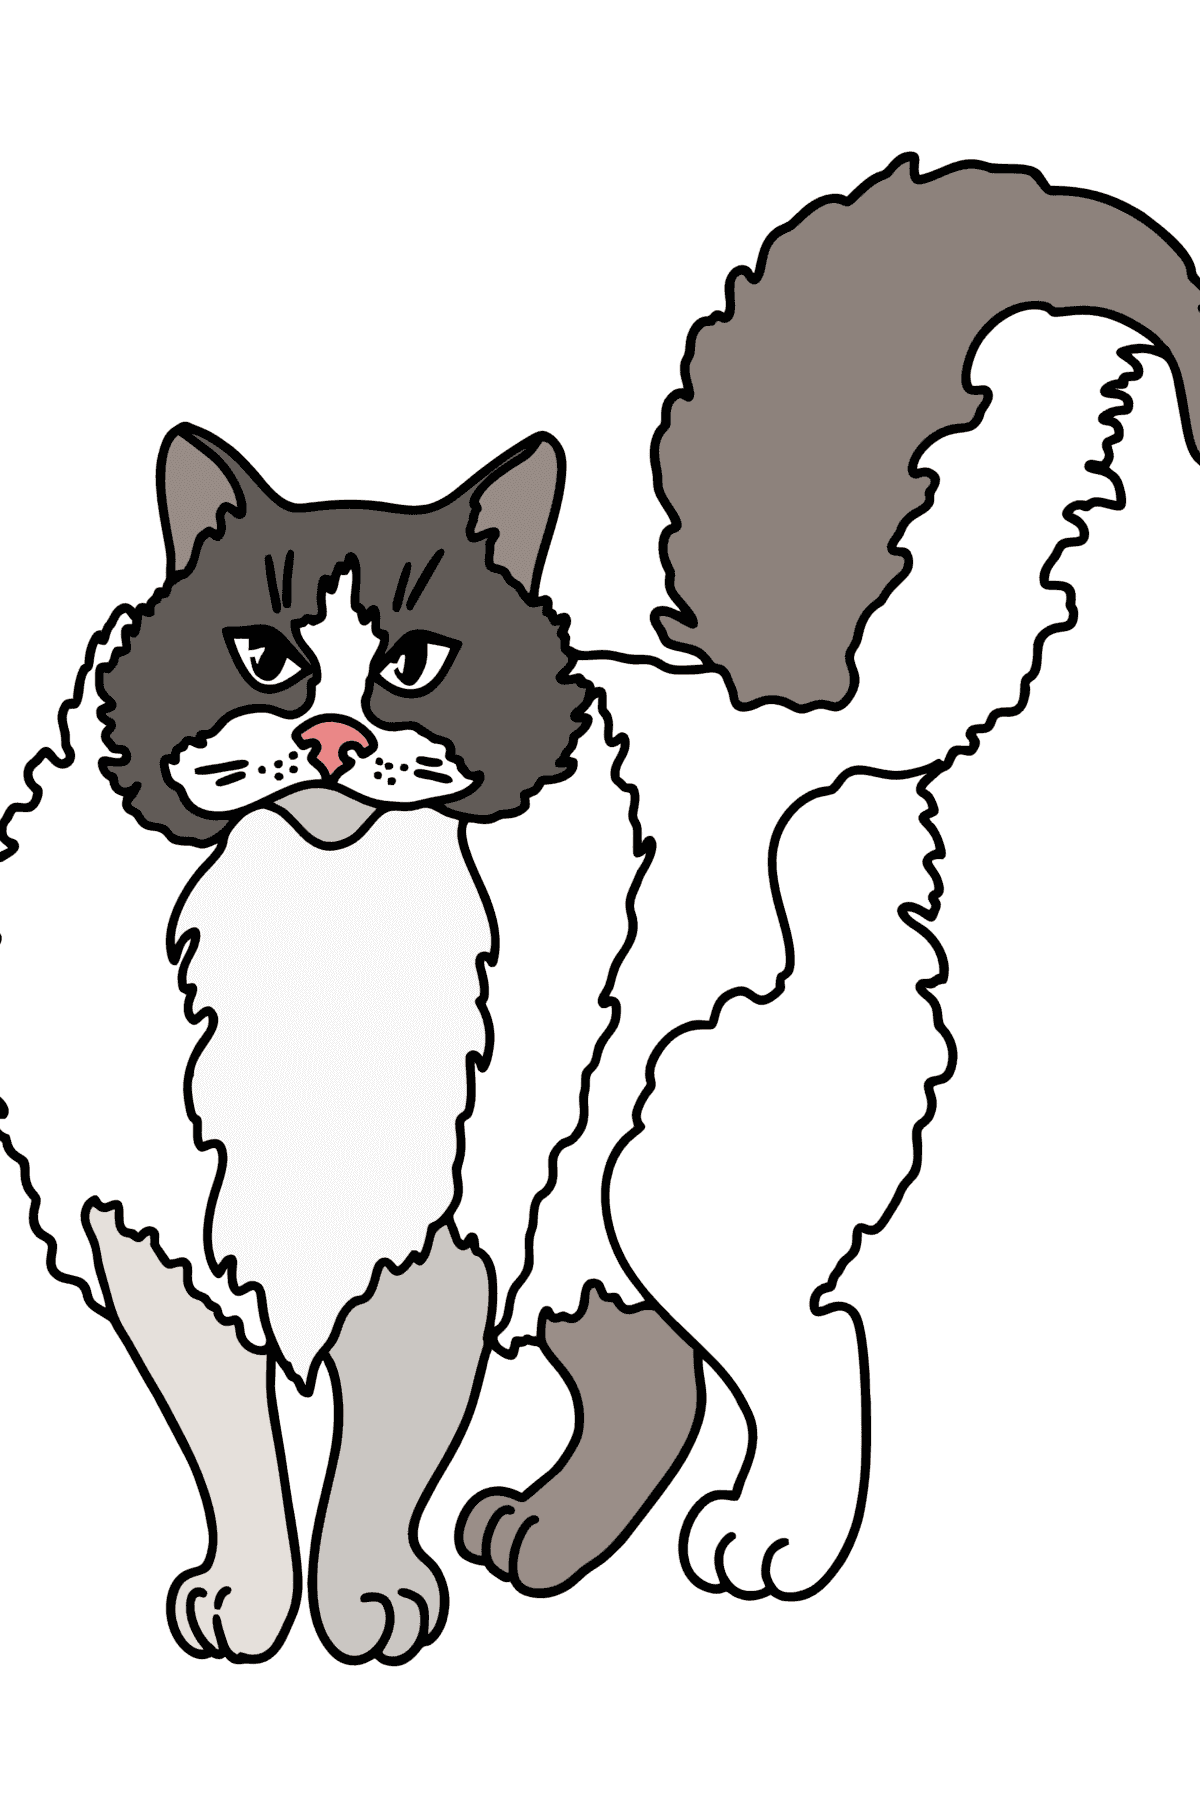 Розмальовка Регдолл кішка - Розмальовки для дітей